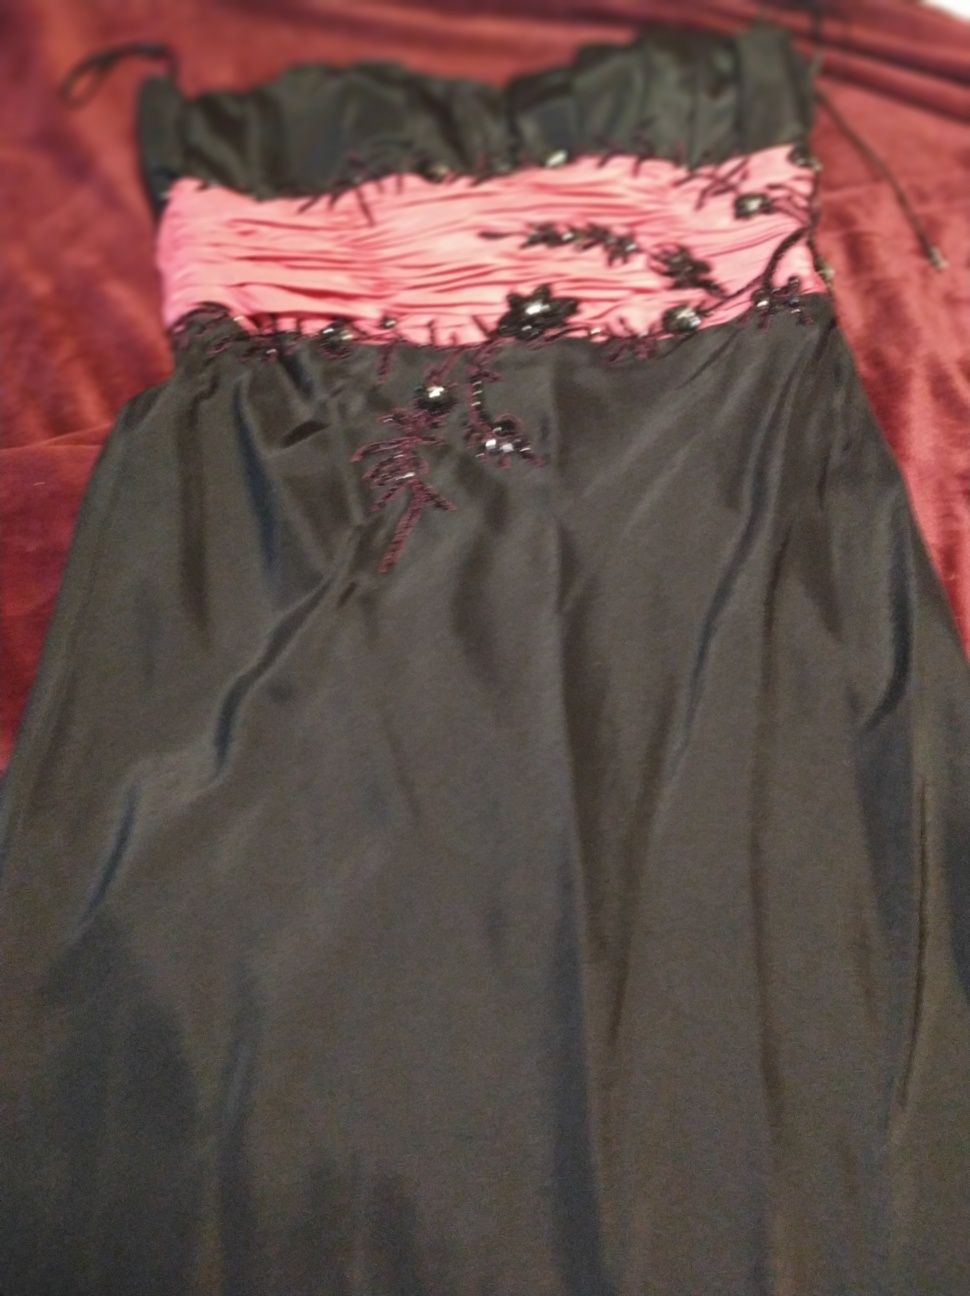 Vănd rochiță de seară neagra cu roz mărimea 52